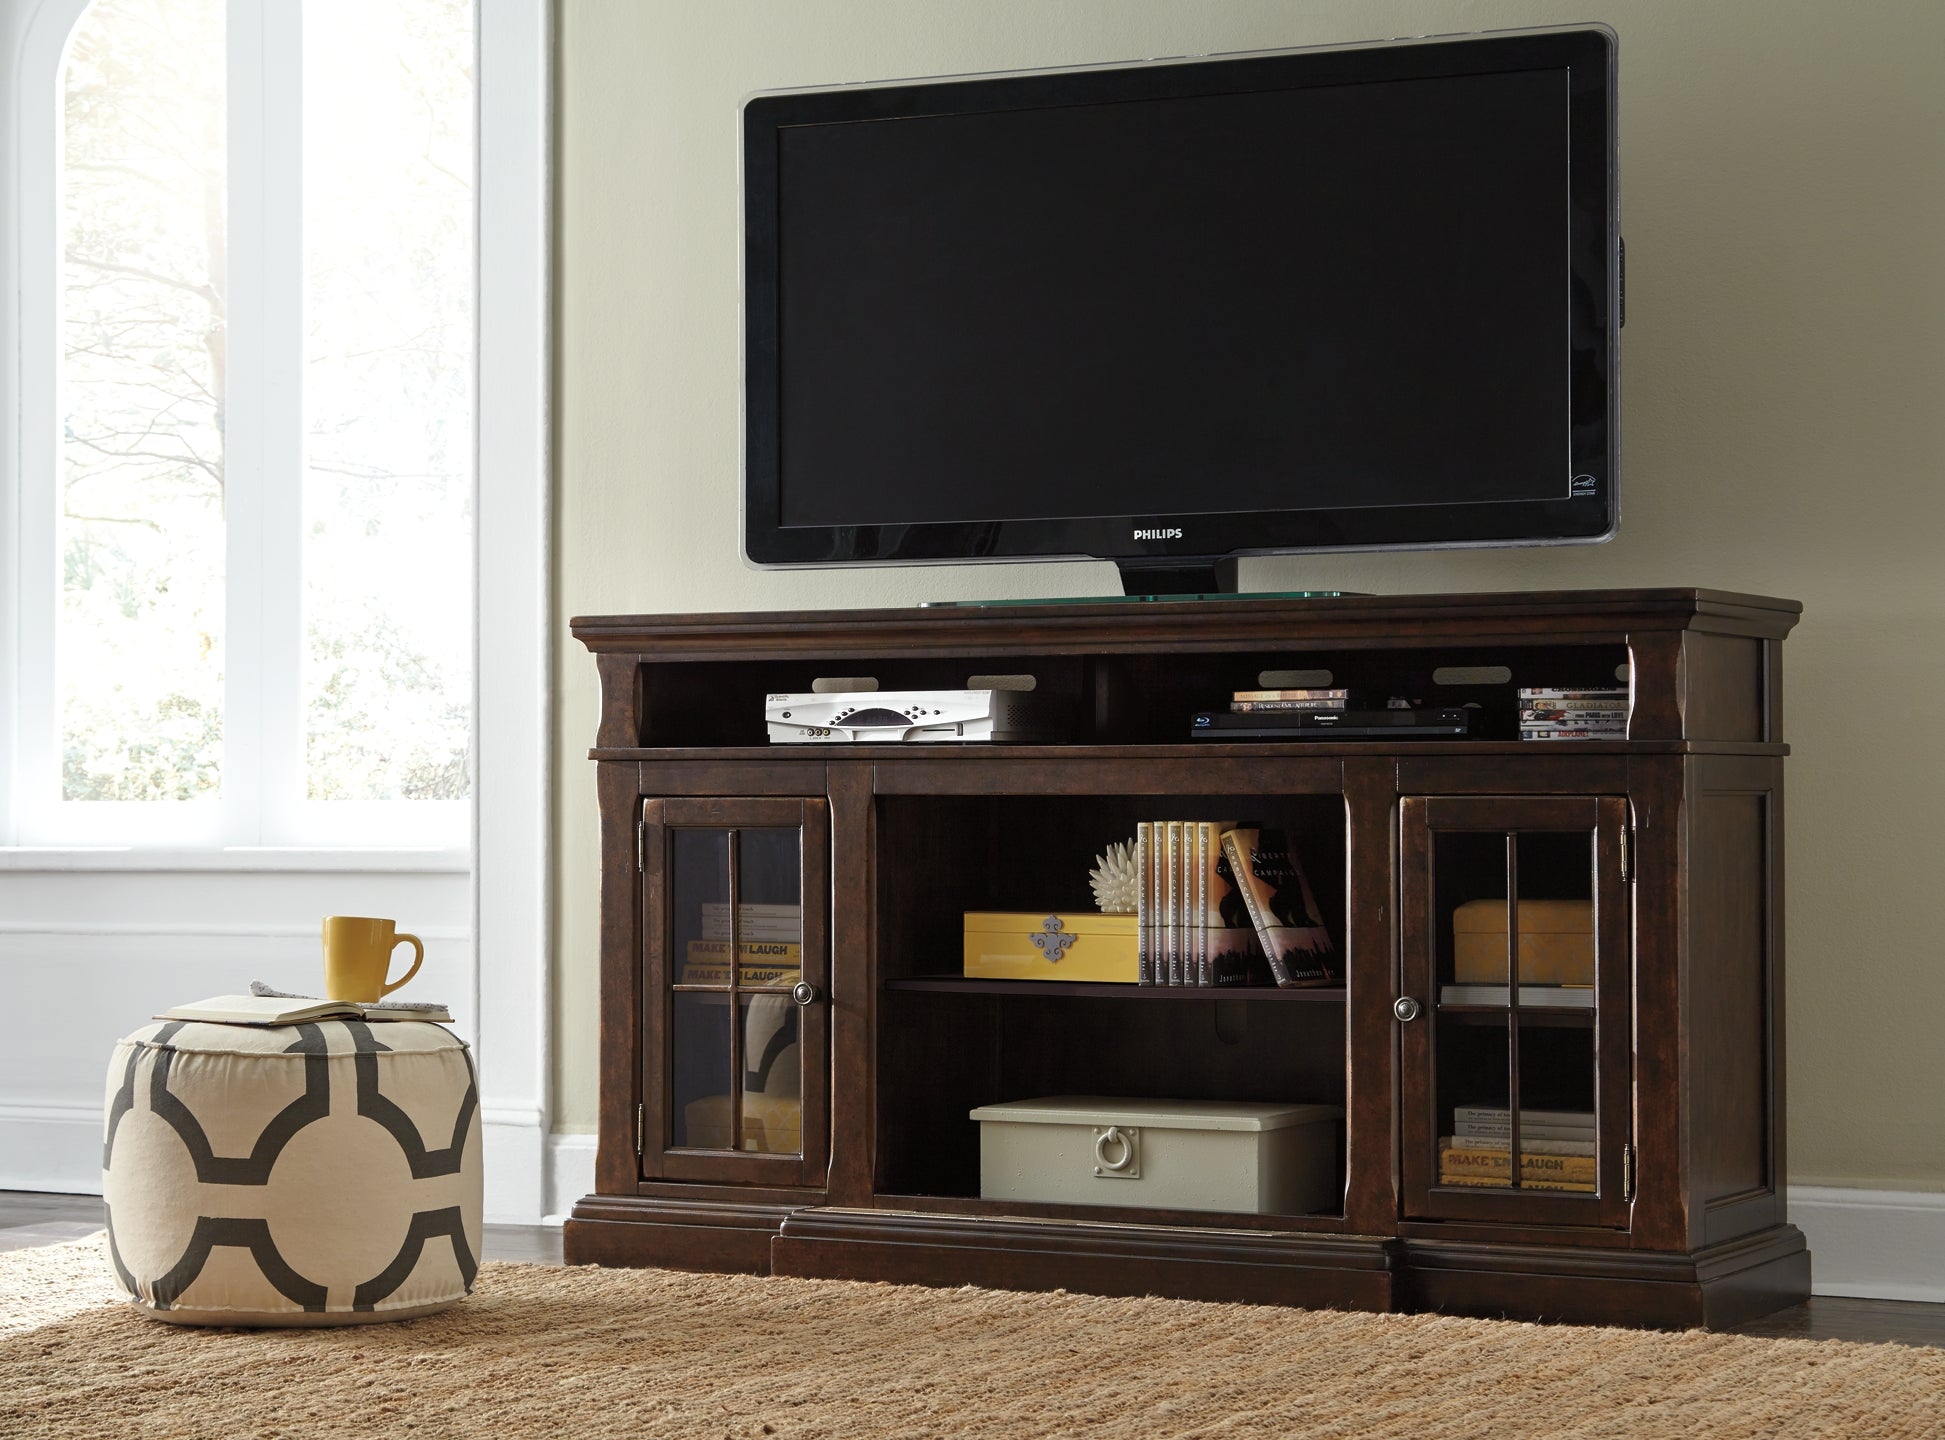 Roddinton XL TV Stand w/Fireplace Option JB's Furniture  Home Furniture, Home Decor, Furniture Store